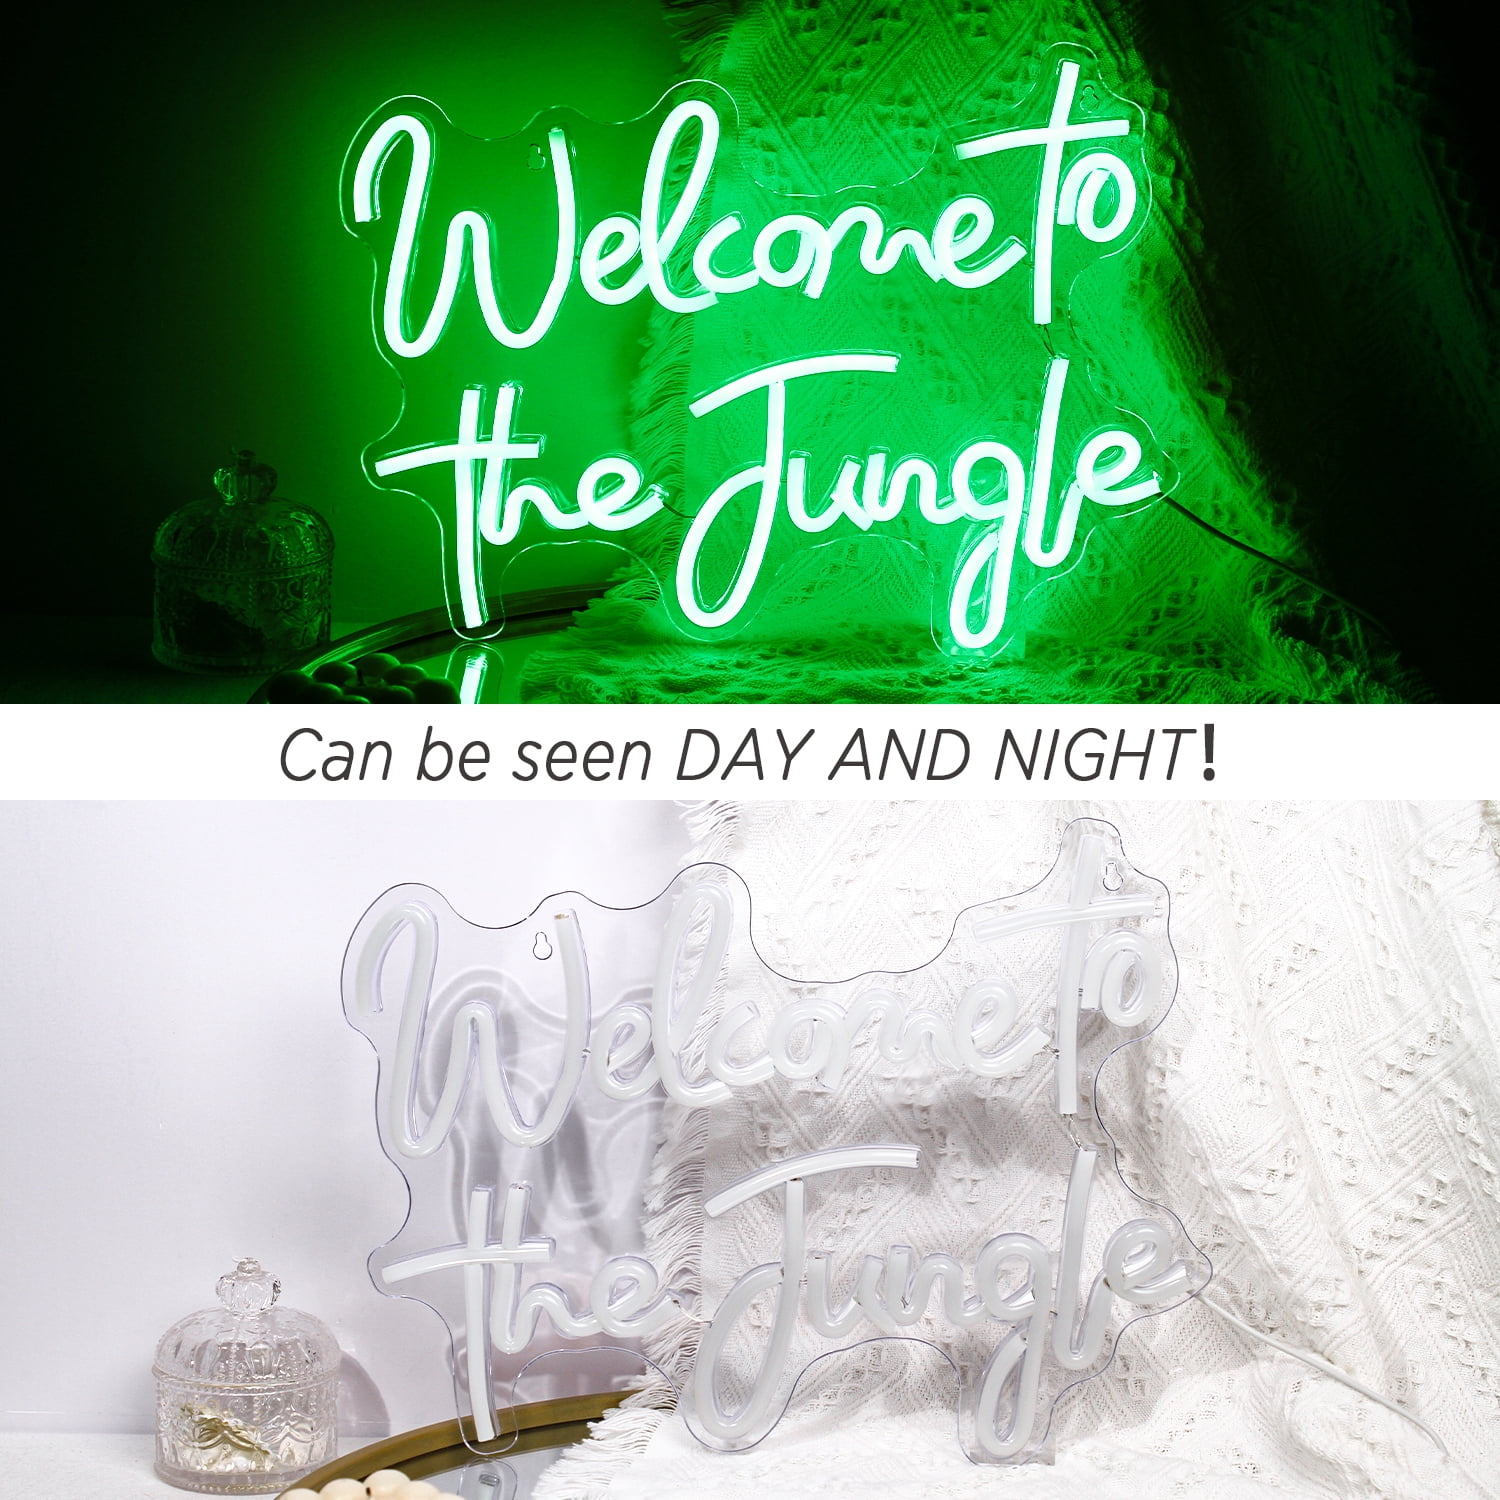 Wanxing Willkommen Zu Den Dschungel Neon Zeichen LED Licht Für